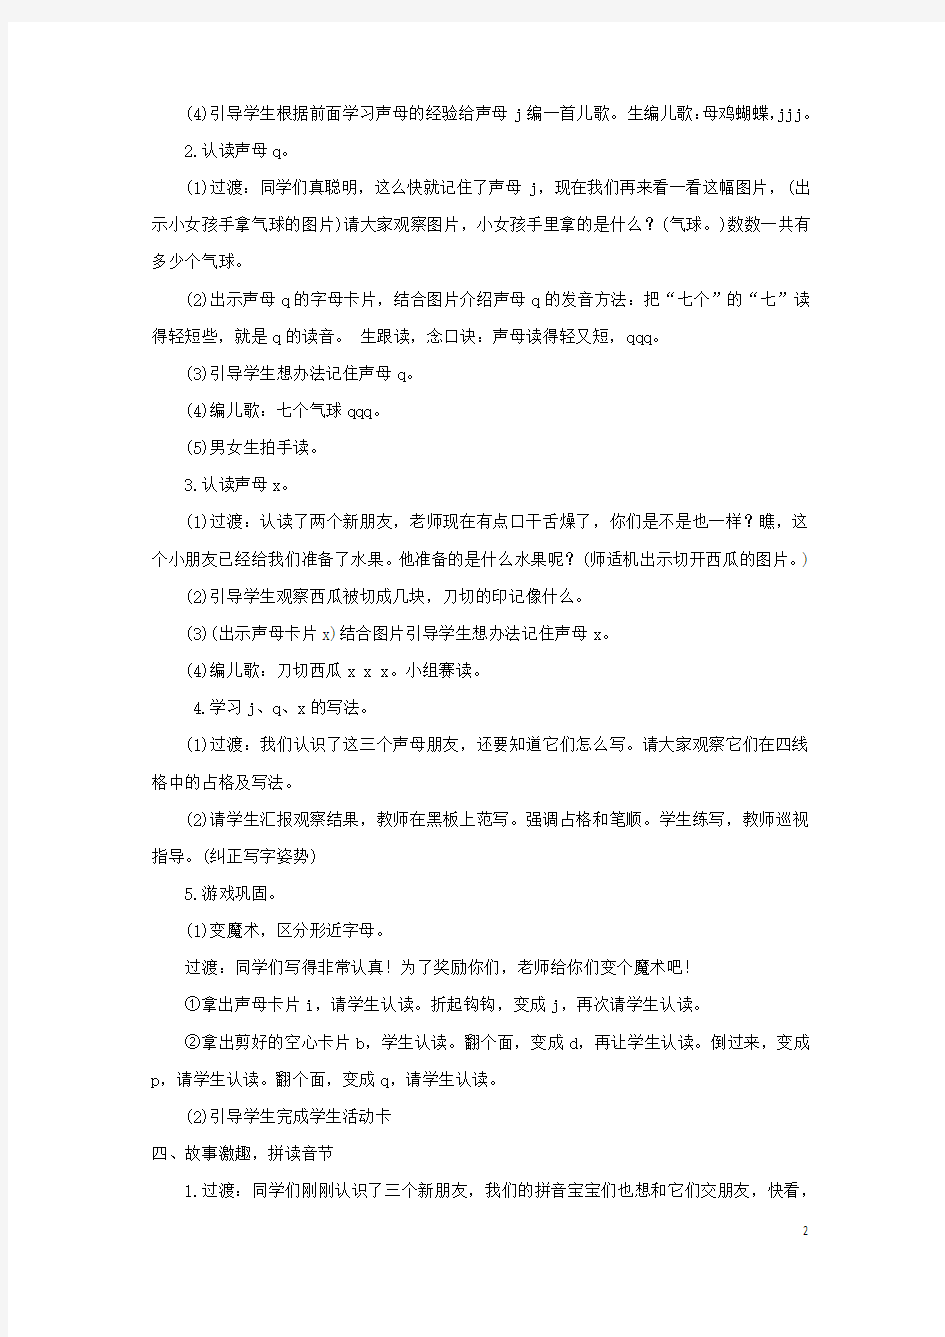 一年级语文上册第二单元汉语拼音6jqx教案新人教版